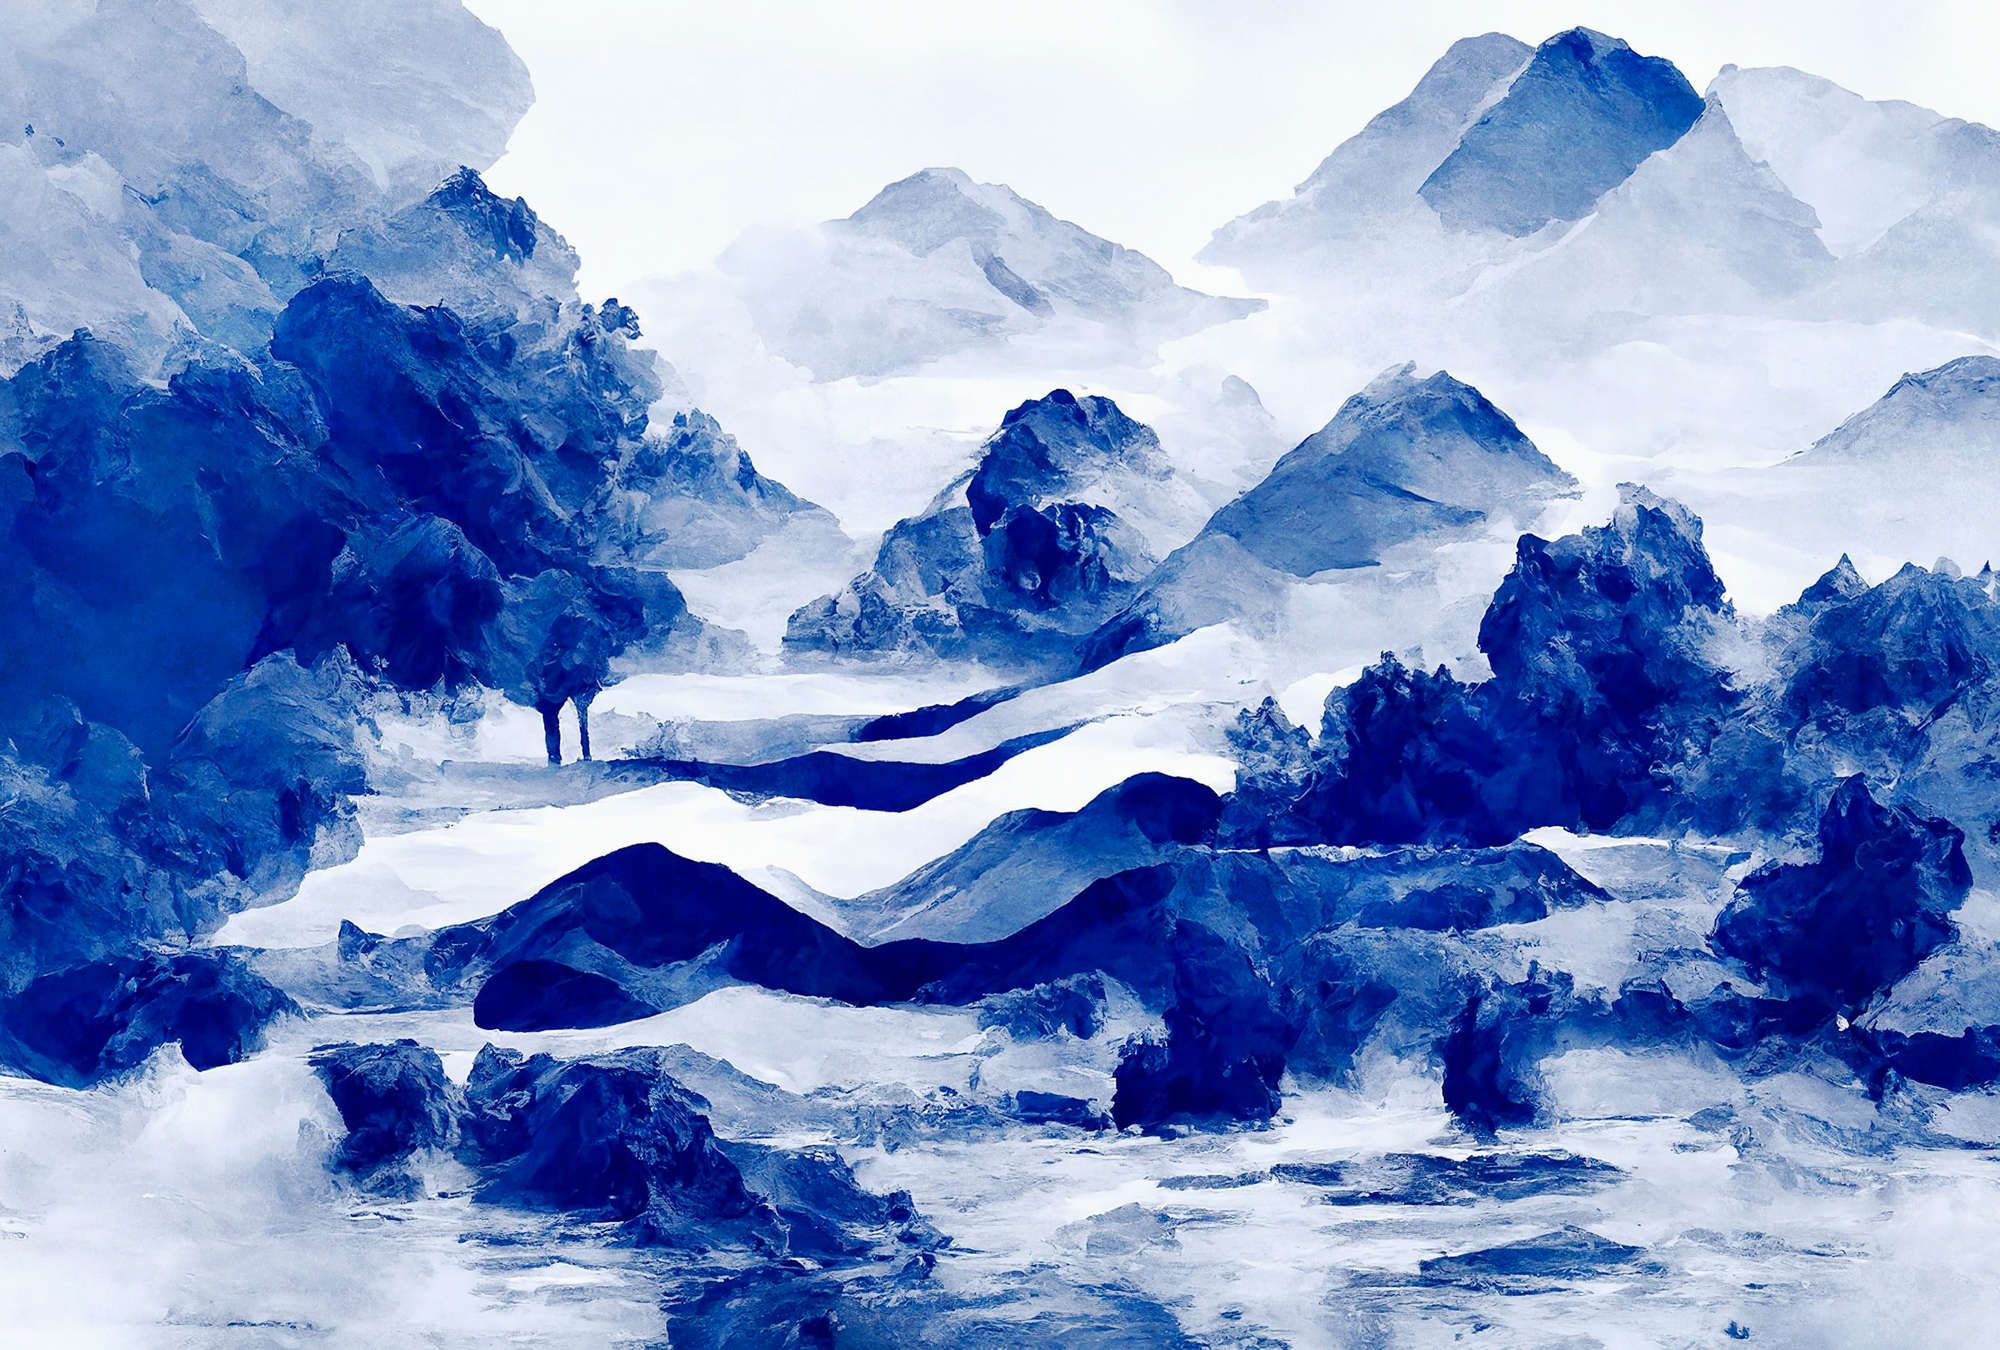             papier peint en papier panoramique »tinterra 3« - Paysage avec montagnes & brouillard - Bleu | Intissé lisse, légèrement nacré
        